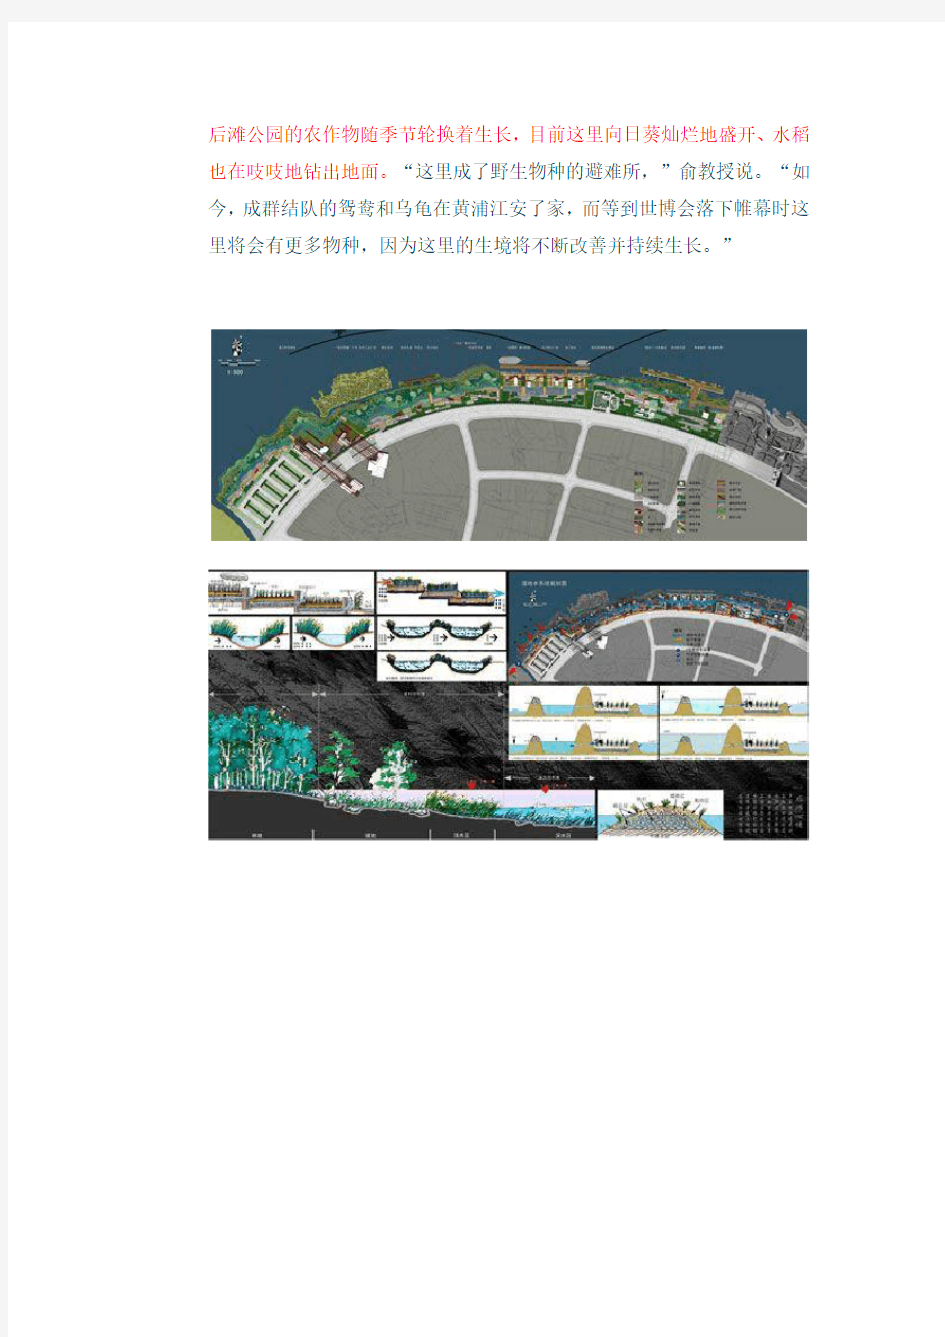 上海世博后滩湿地公园分析